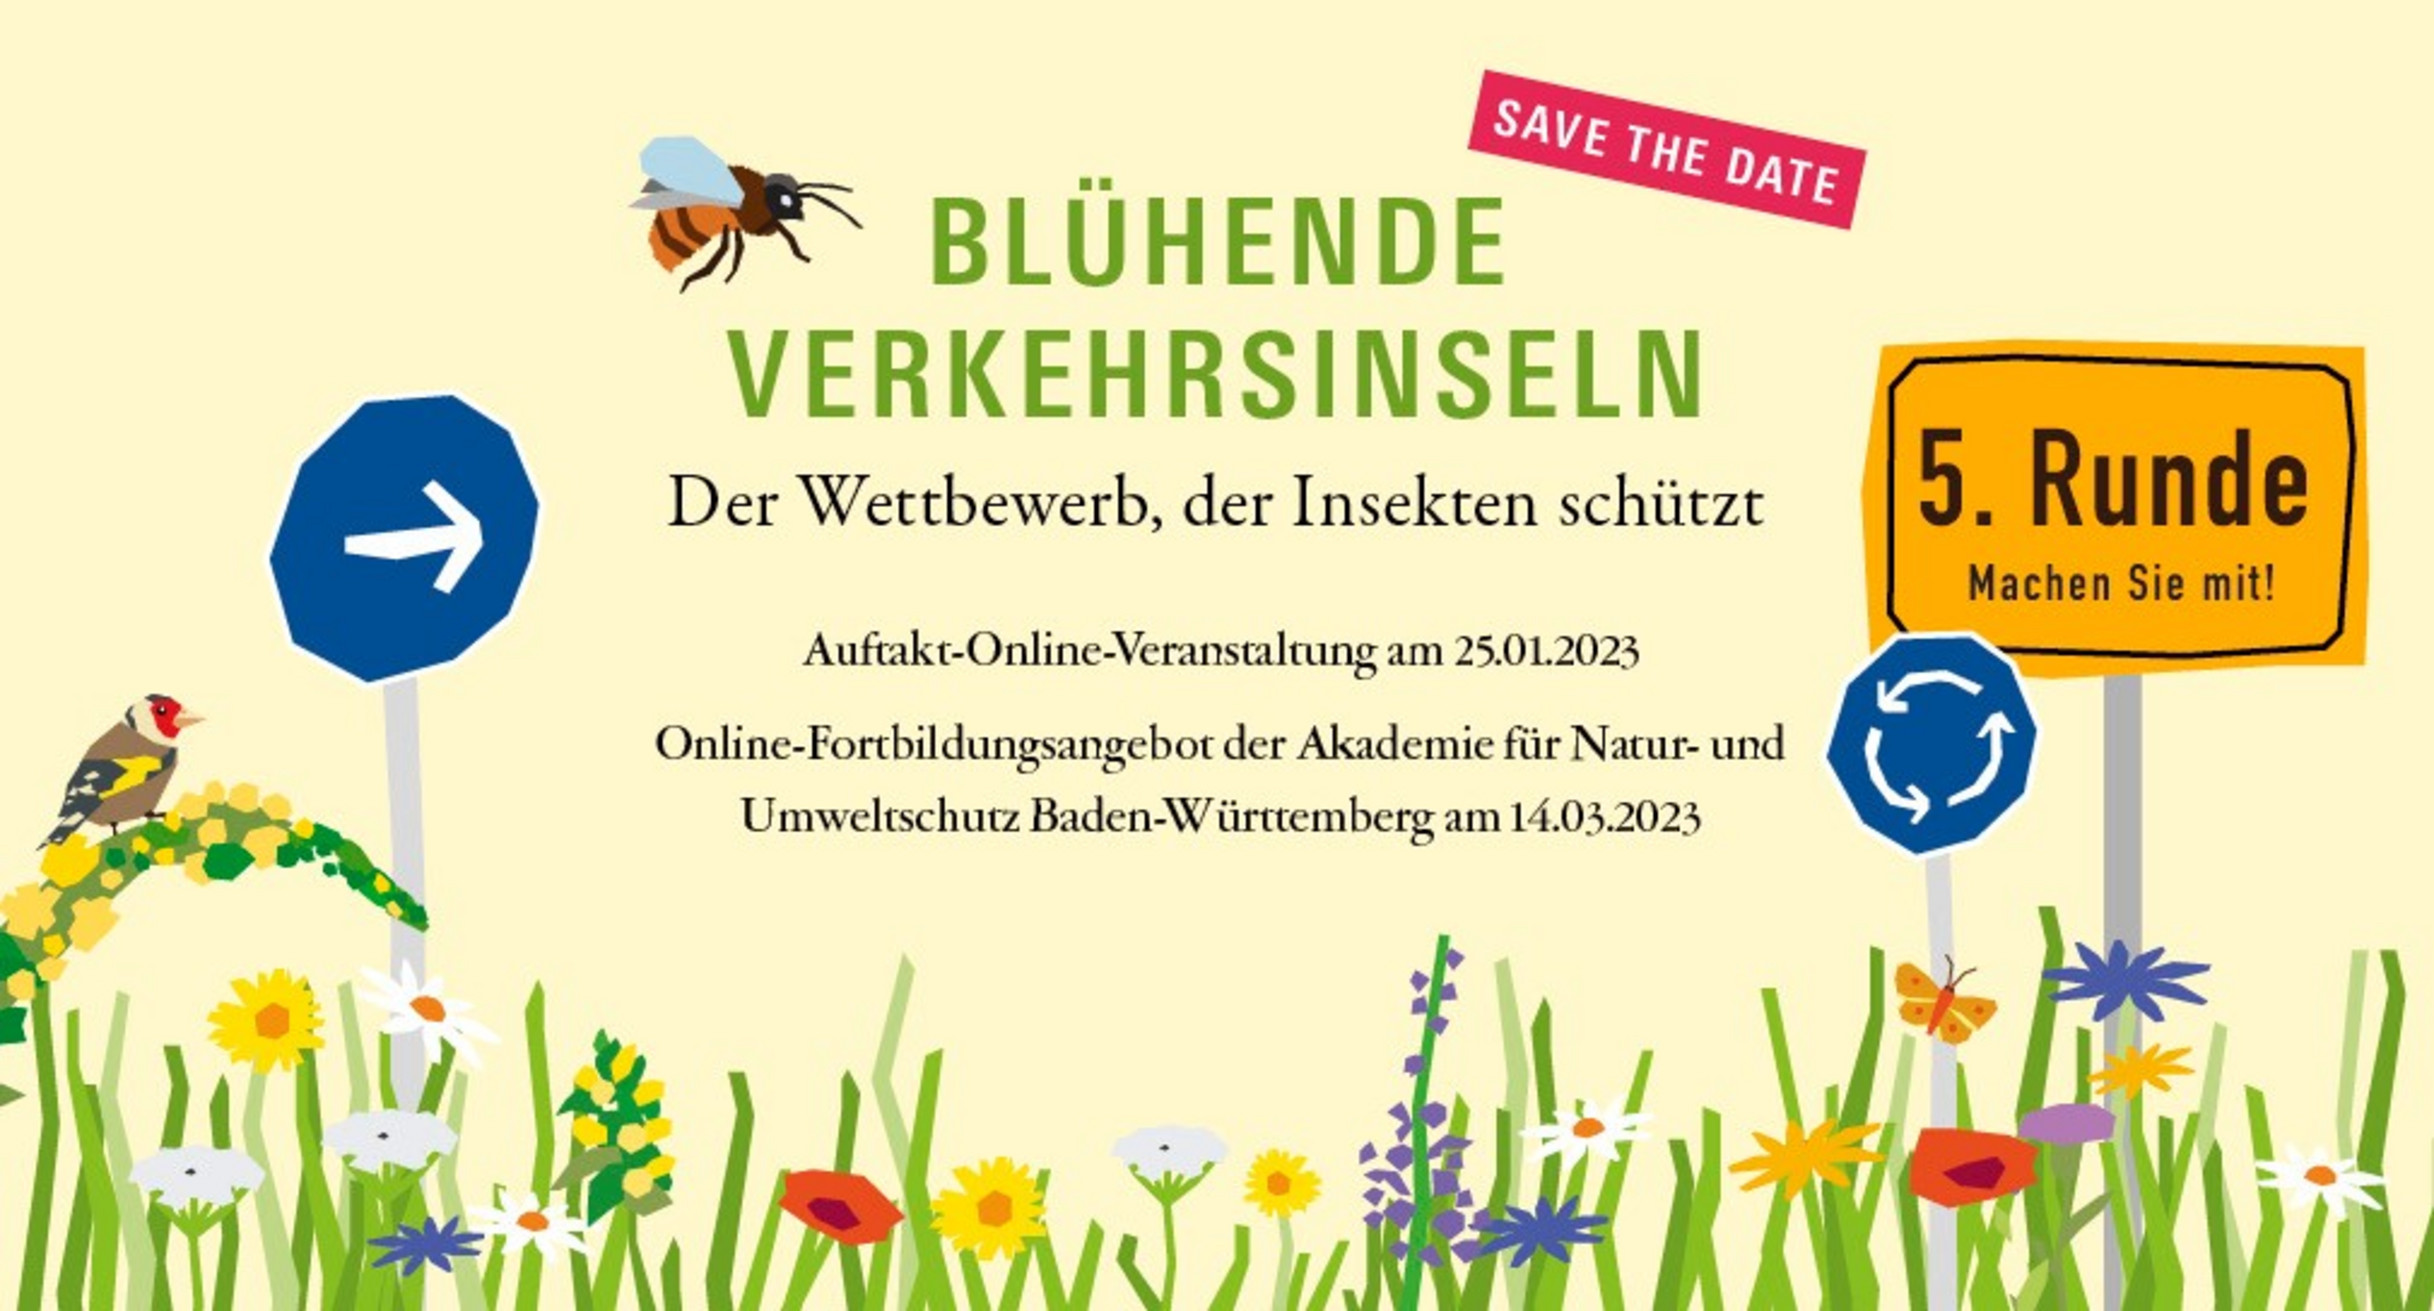 Plakat des Wettbewerbs mit Biene drauf